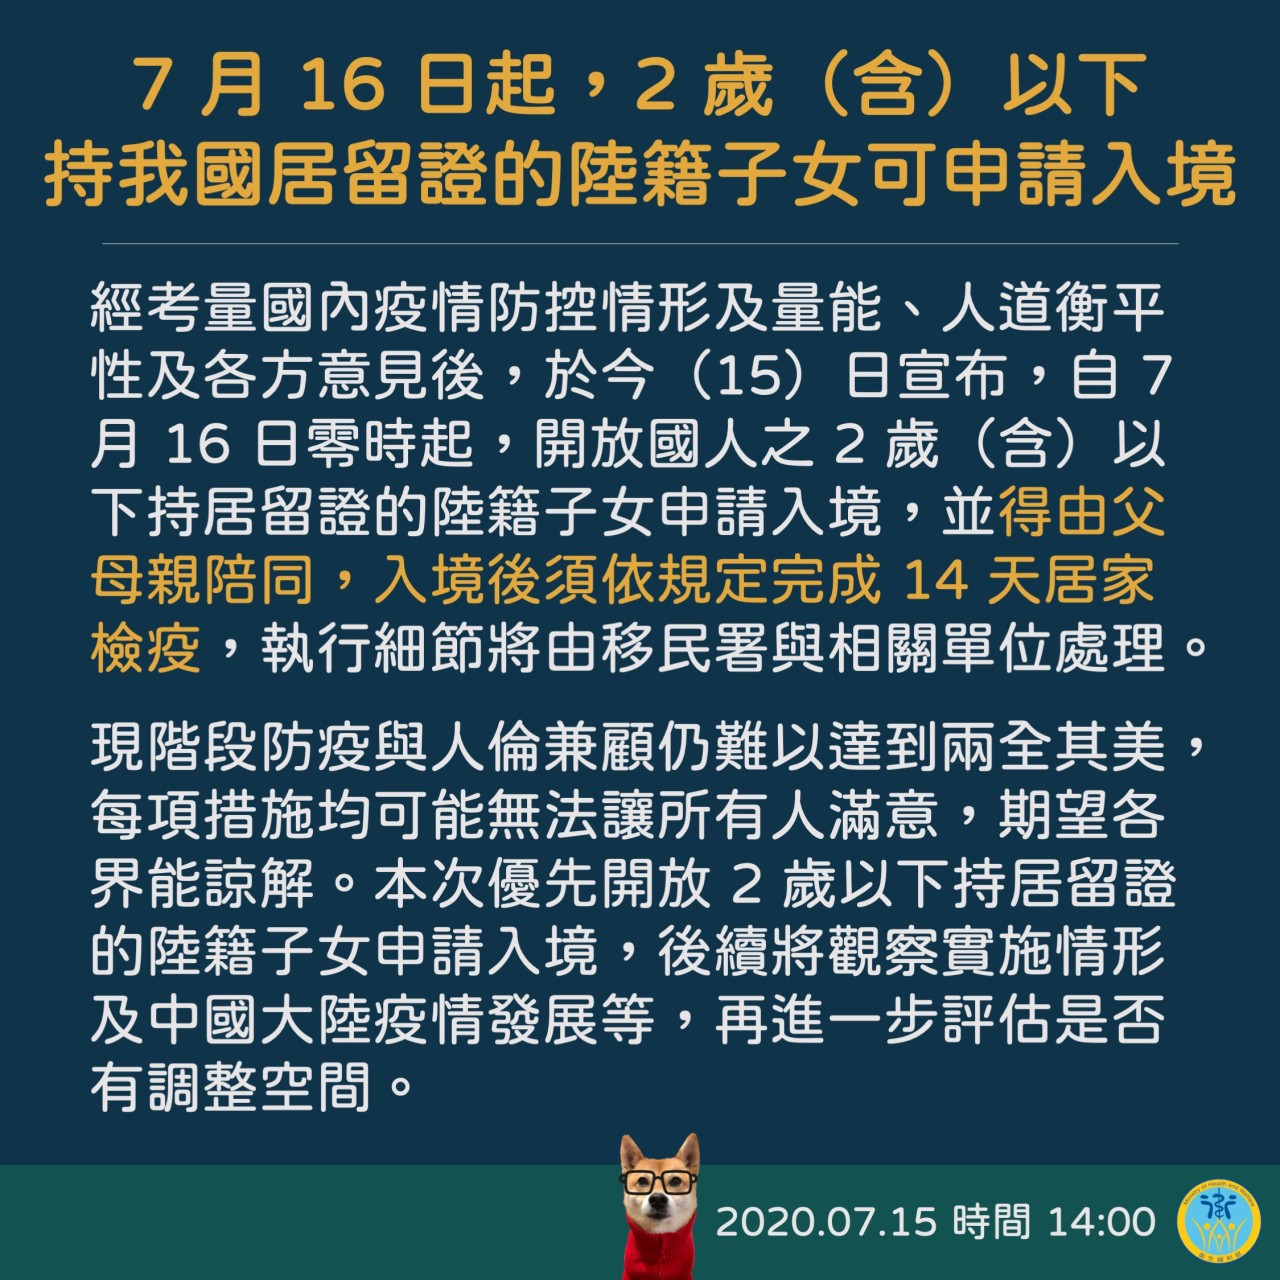 16 ก.ค.เป็นต้นไป เด็กอายุไม่เกิน 2 ขวบ สัญชาติจีนที่ถือใบถิ่นที่อยู่สามารถยื่นขอเข้าไต้หวันได้ (ภาพจาก กรมควบคุมโรคไต้หวัน)